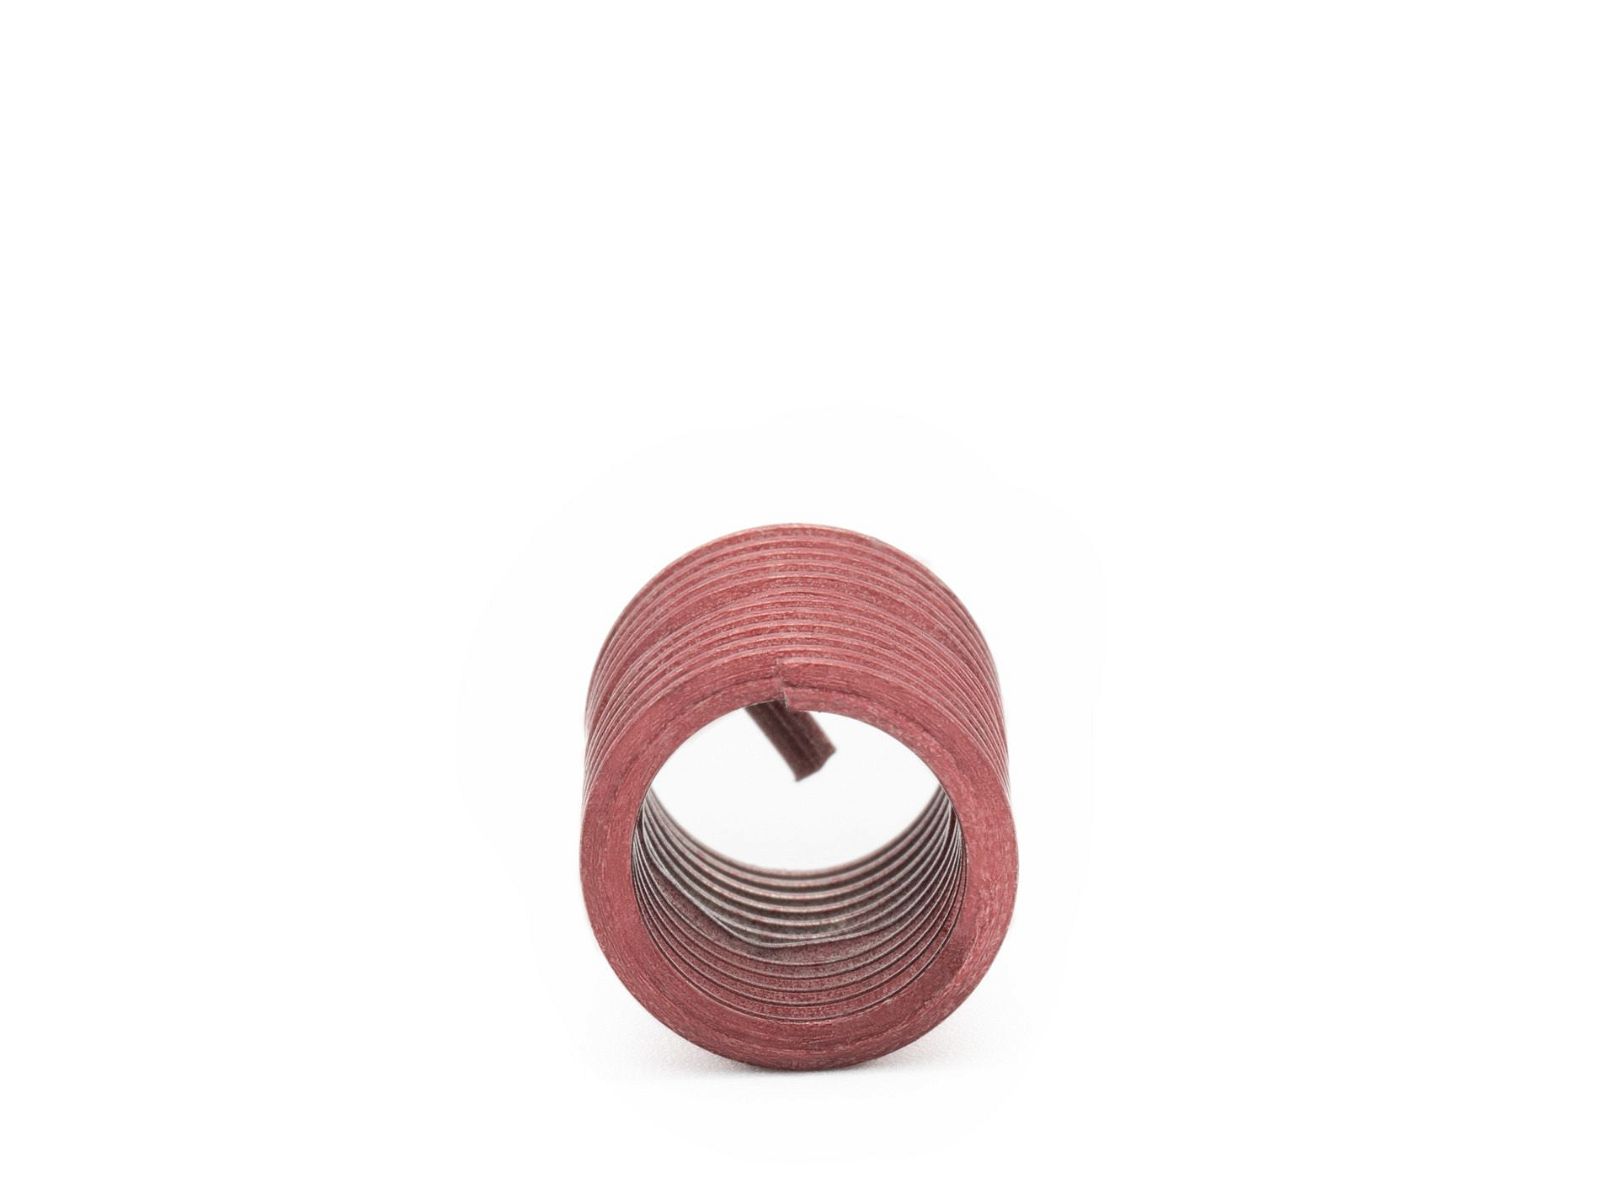 BaerCoil Wire Thread Inserts M 10 x 1.25 - 2.0 D (20 mm) - screw grip (screw locking) - 100 pcs.